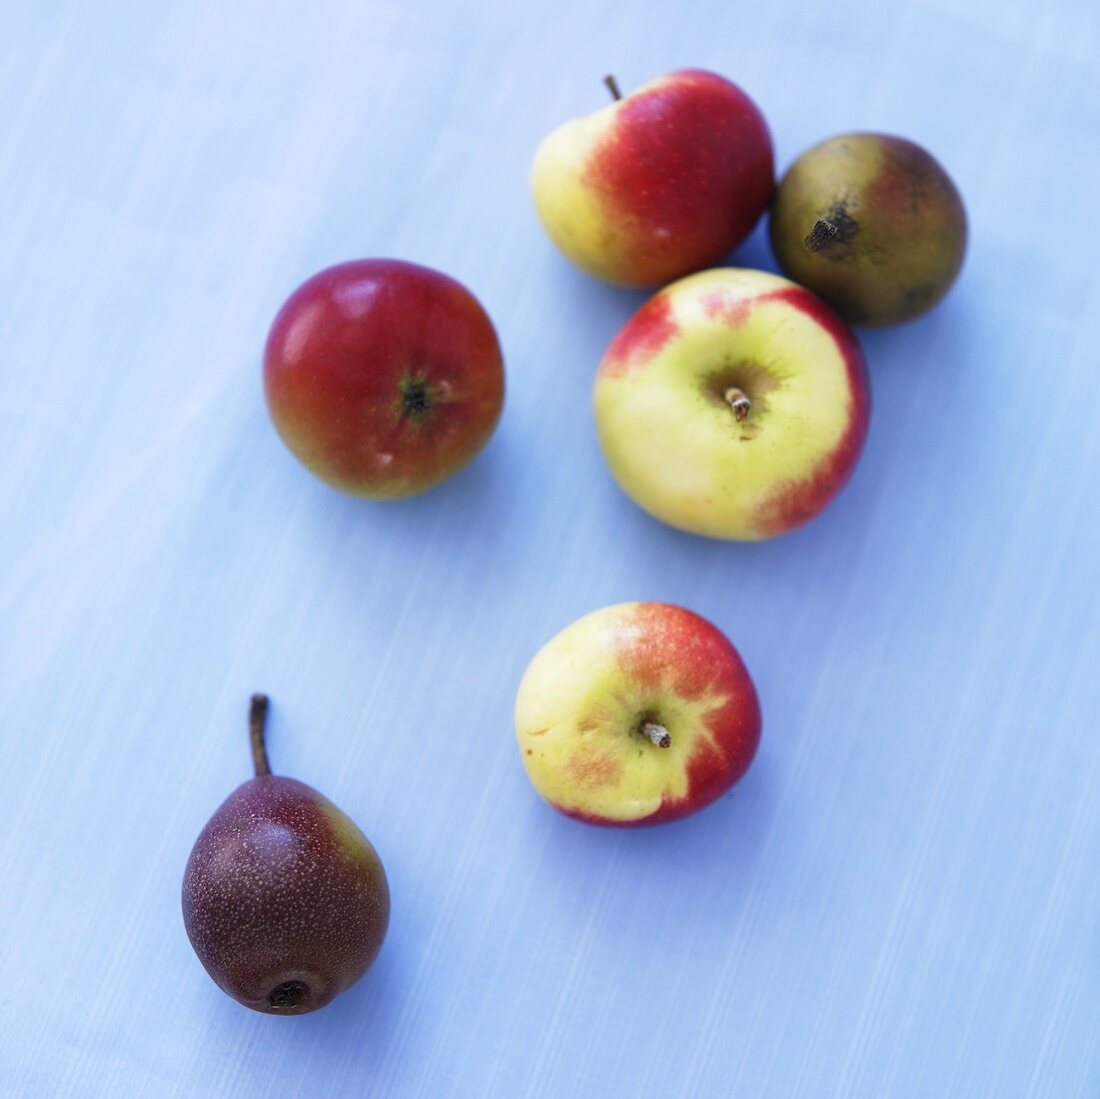 Frische Äpfel (Sorte Lady) und Minibirnen auf blauem Untergrund